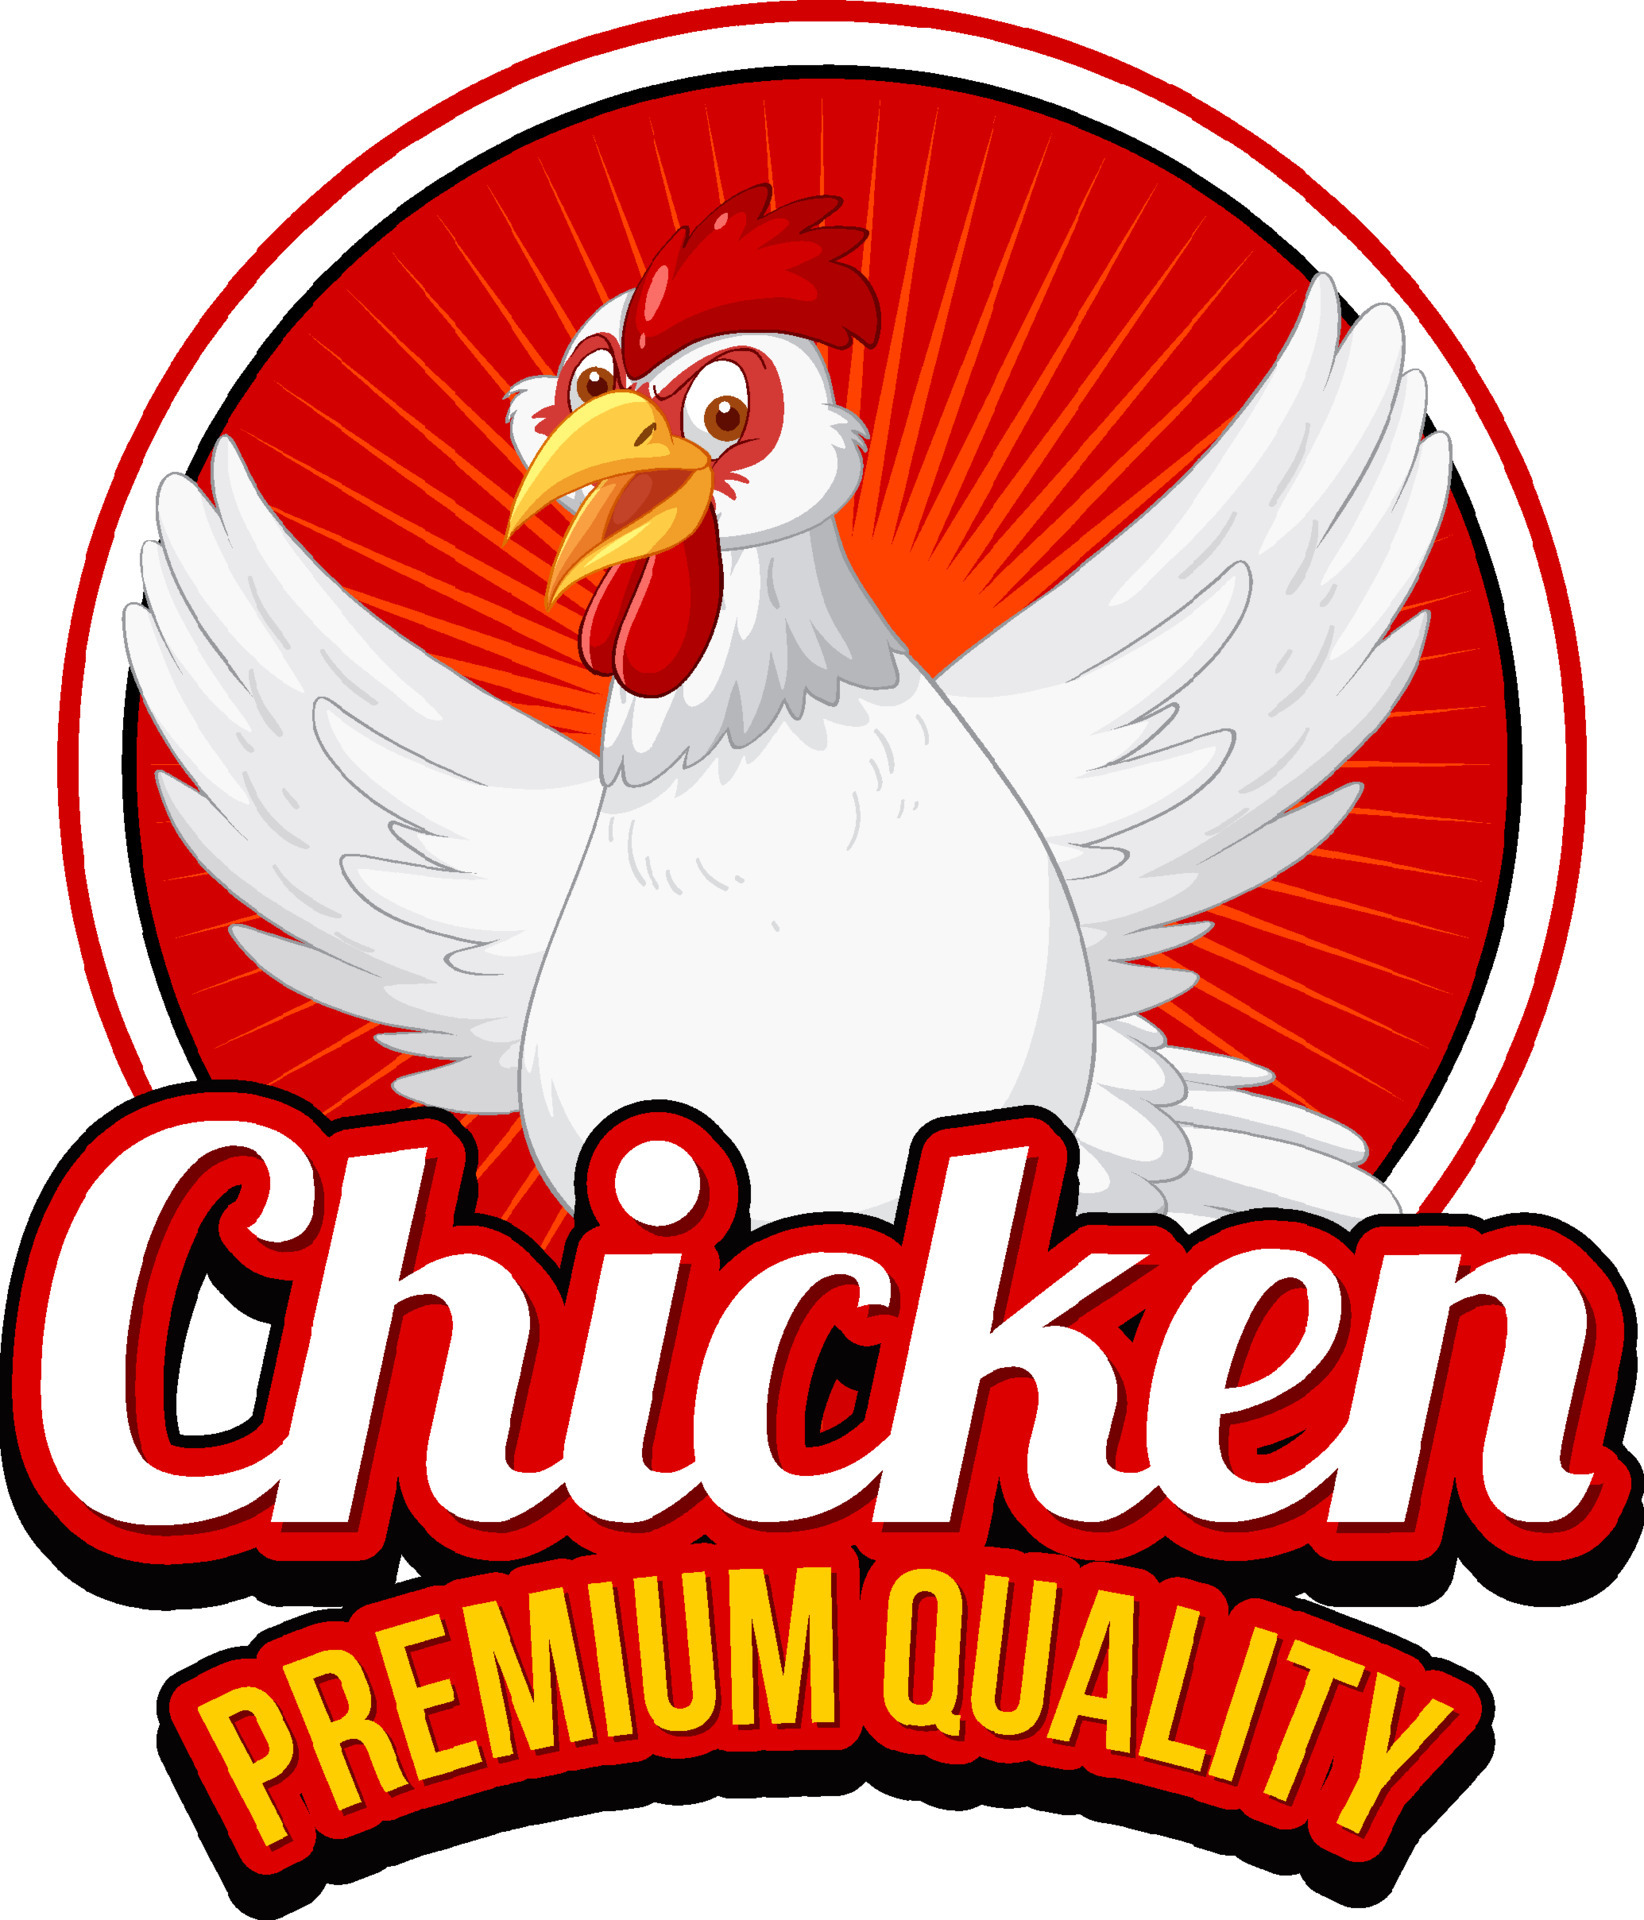 Desenho de galinha, Vetor Premium